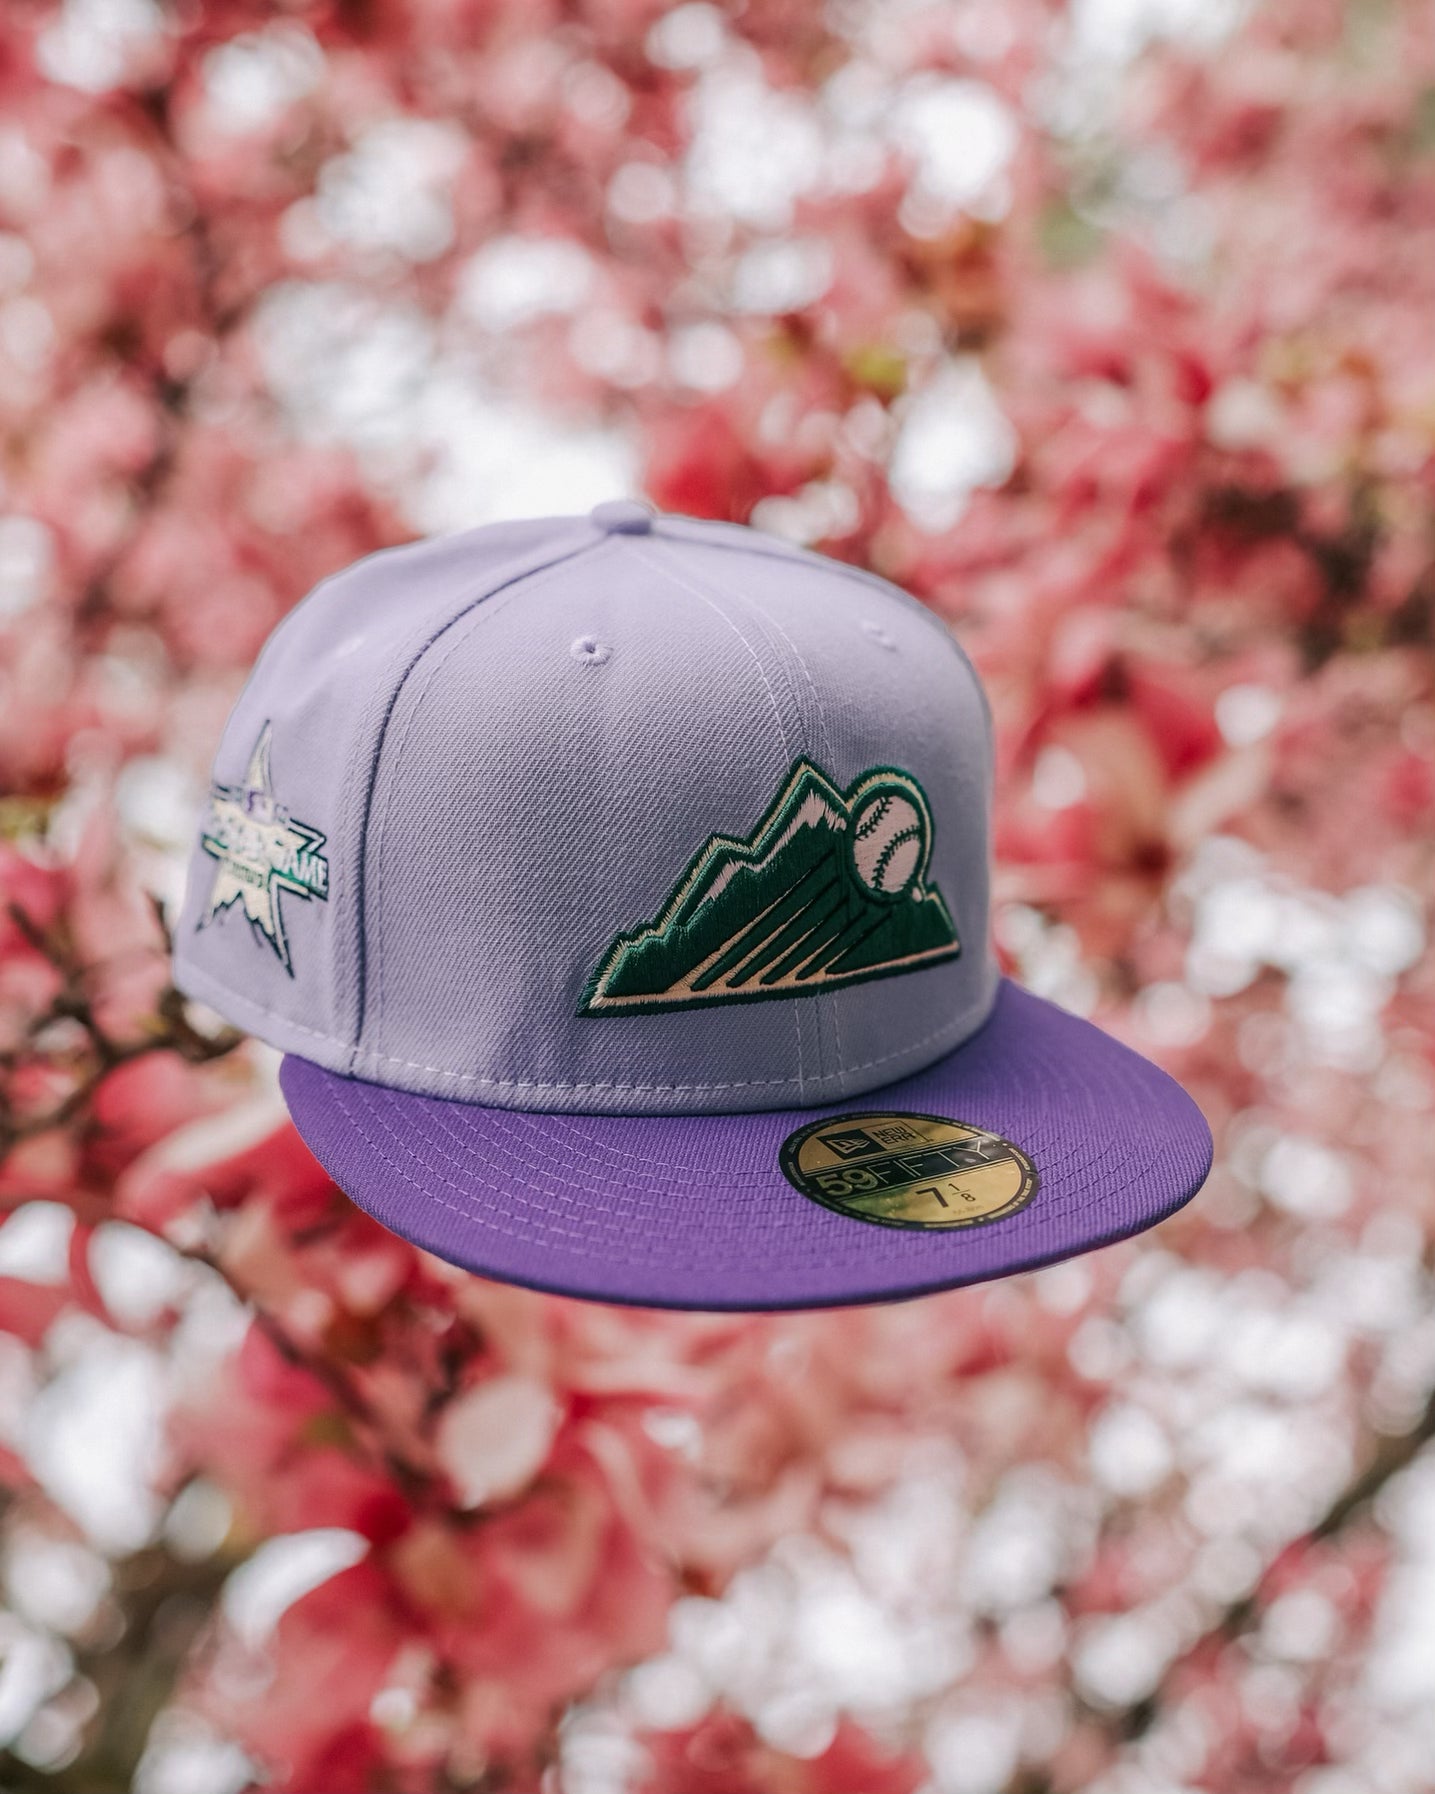 New Era Hat - Colorado Rockies - Lilac / Purple